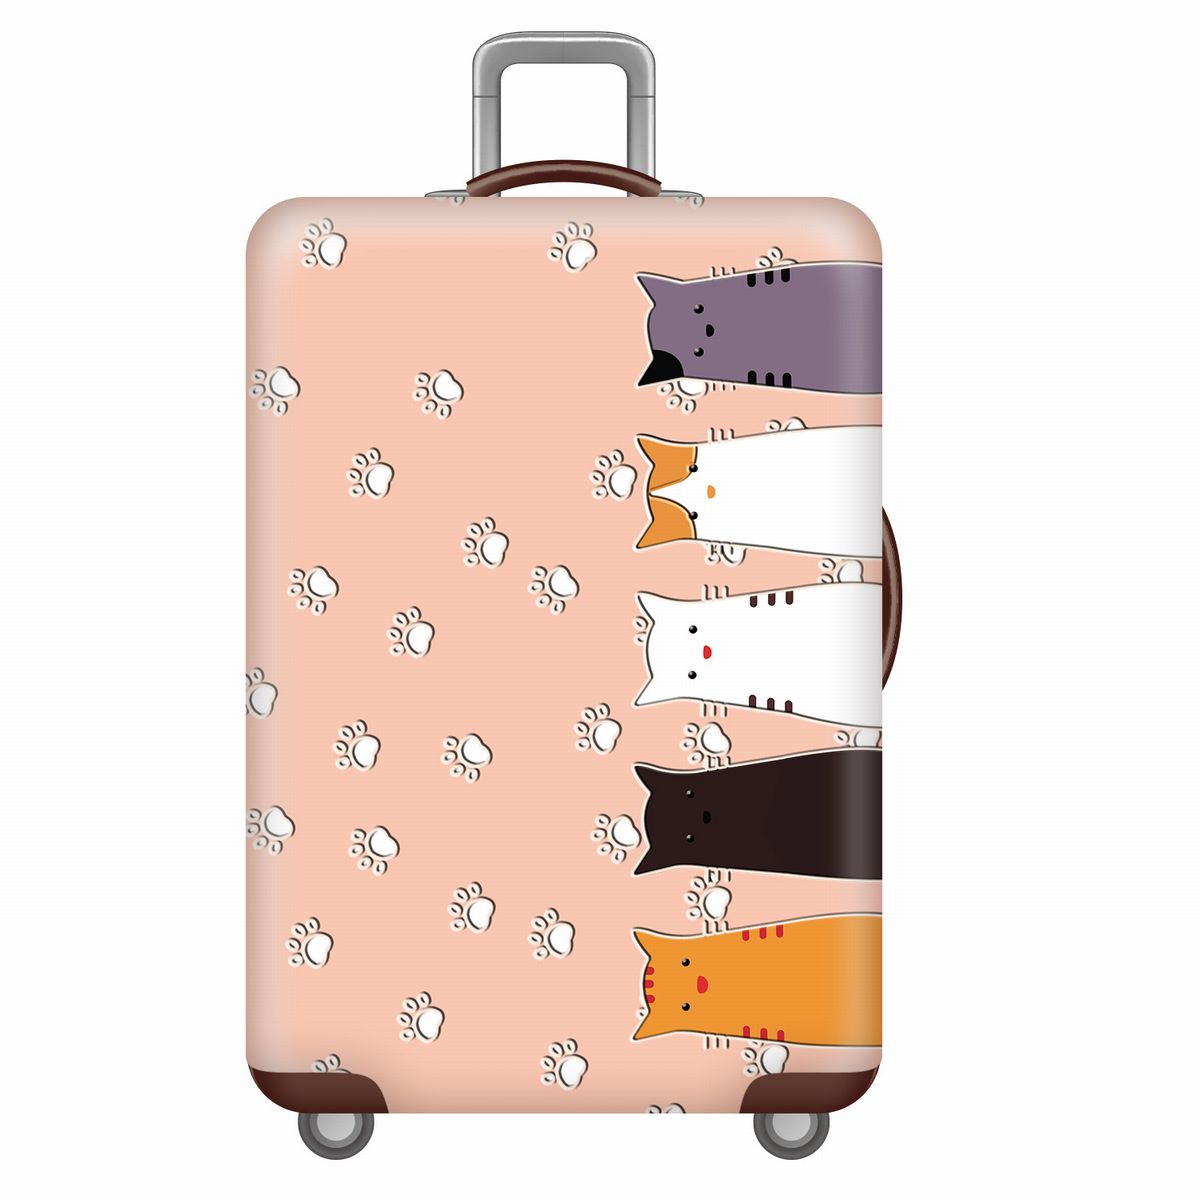 スーツケースカバー かわいい5匹の猫 肉球 イラスト プリント (L)